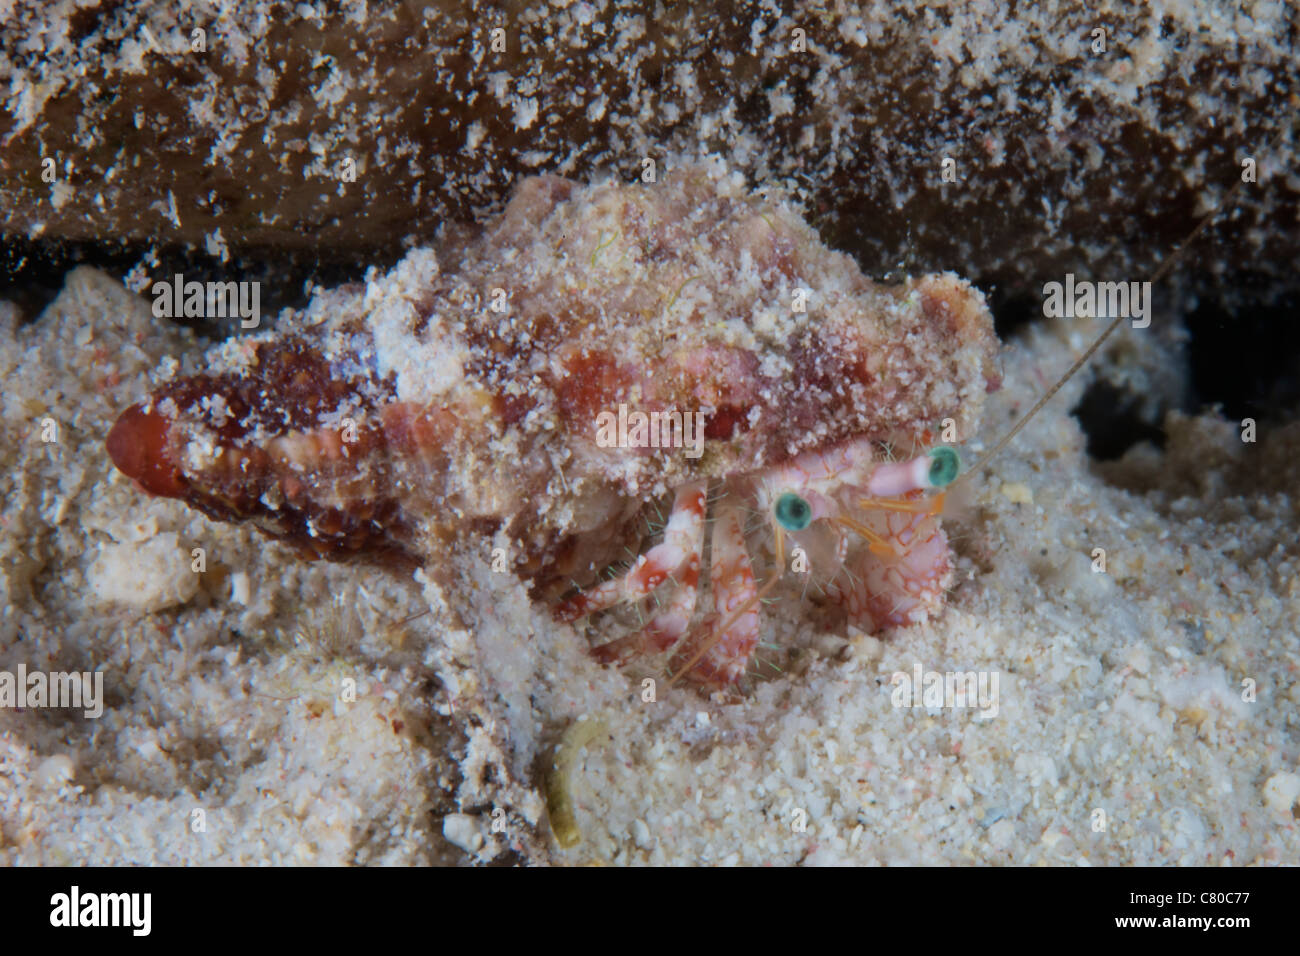 Piccolo granchio eremita, Bonaire, Caraibi Paesi Bassi. Foto Stock